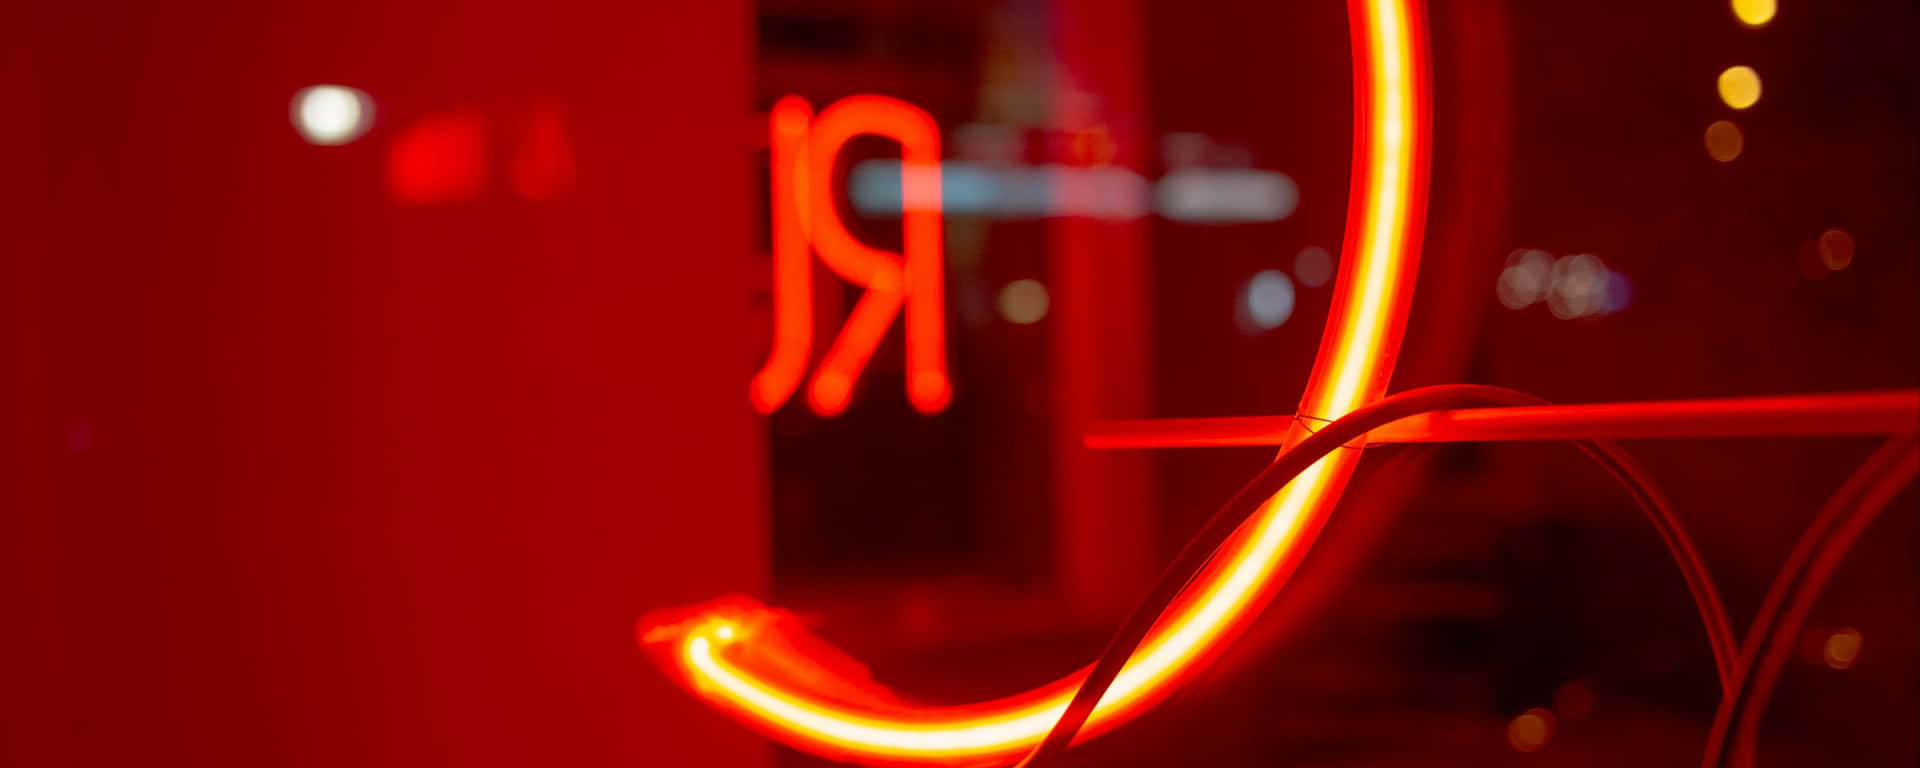 Luceal Neon Su Parete Di Vetro Ultra Wide Hd Rossa Sfondo